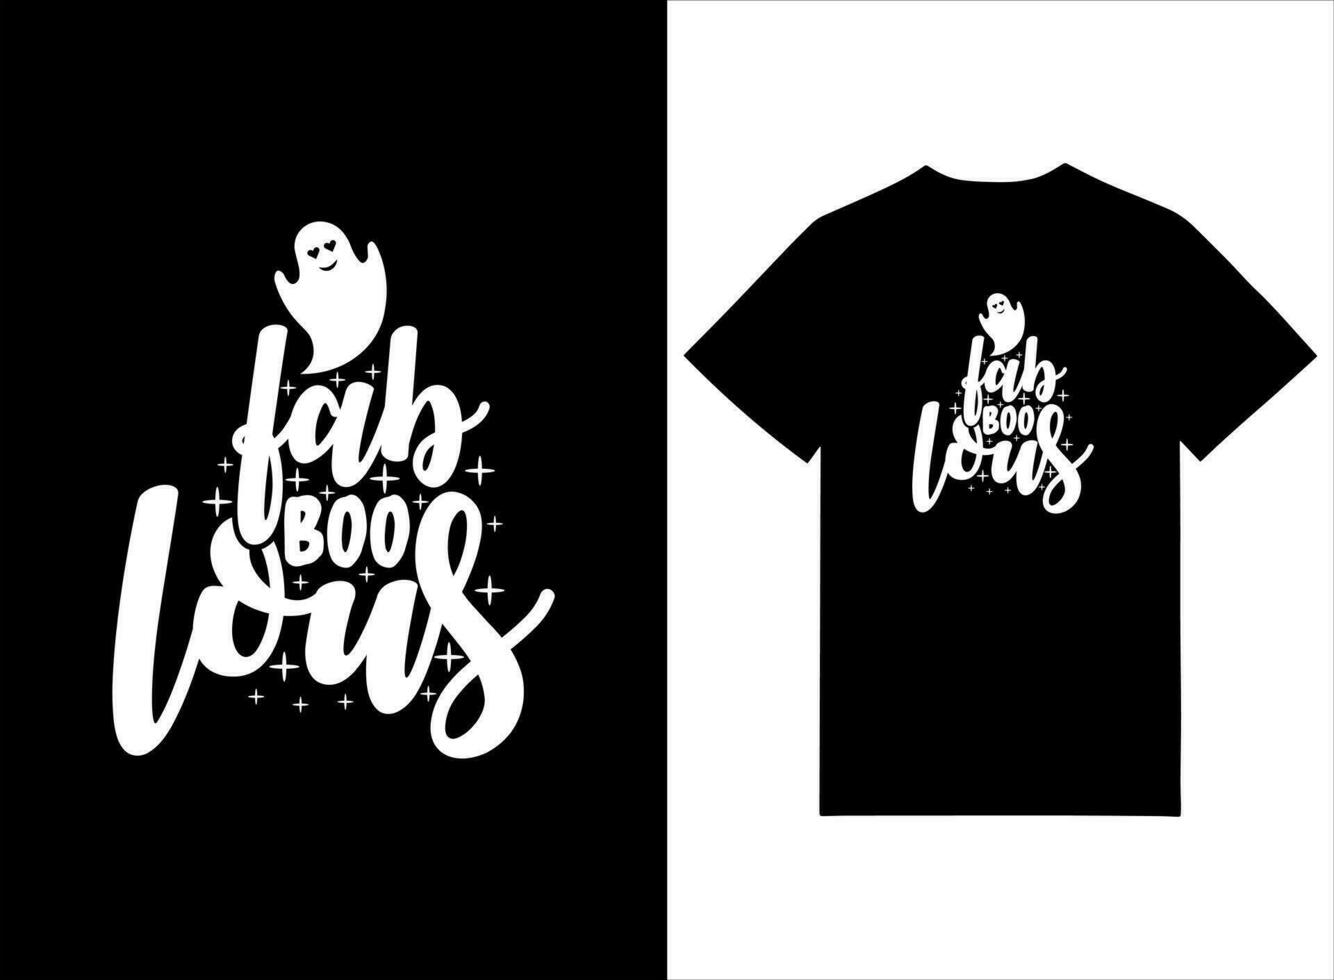 fabelhaft Boo laut Halloween T-Shirt Design vektor